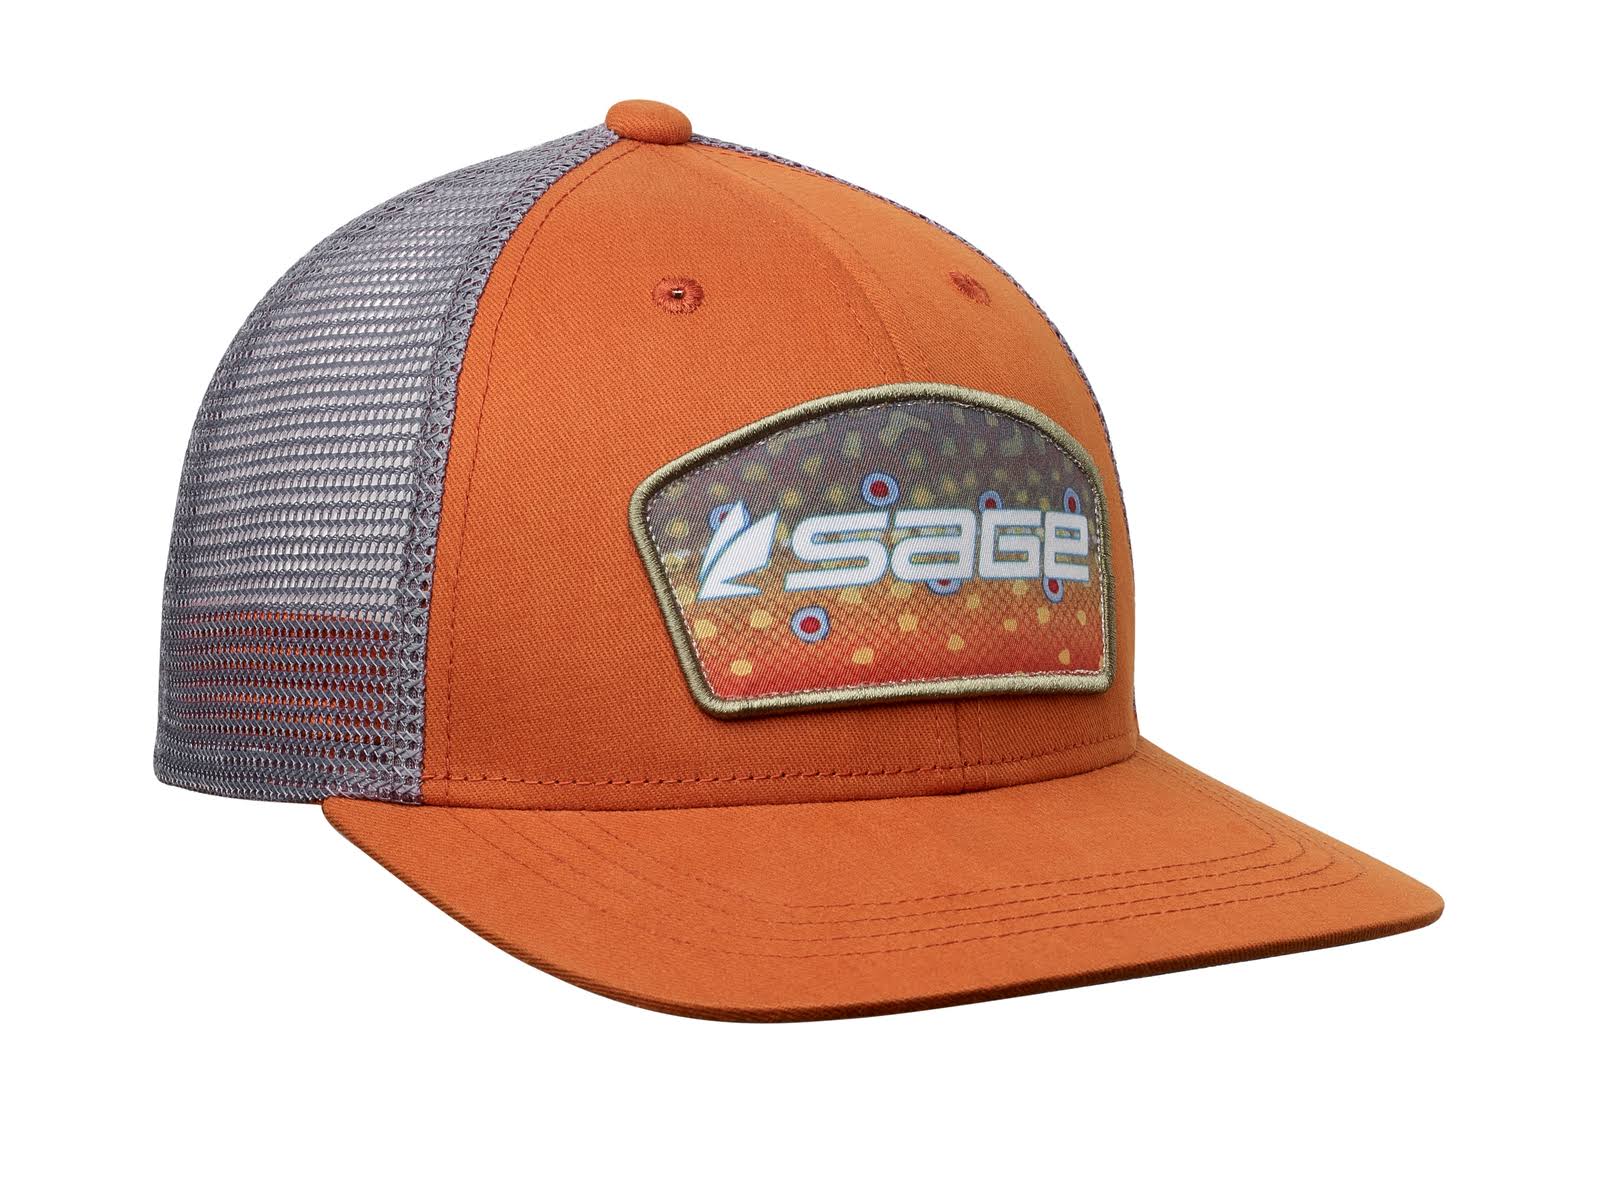 Sage Patch Trucker Hat - Brook Trout Orange